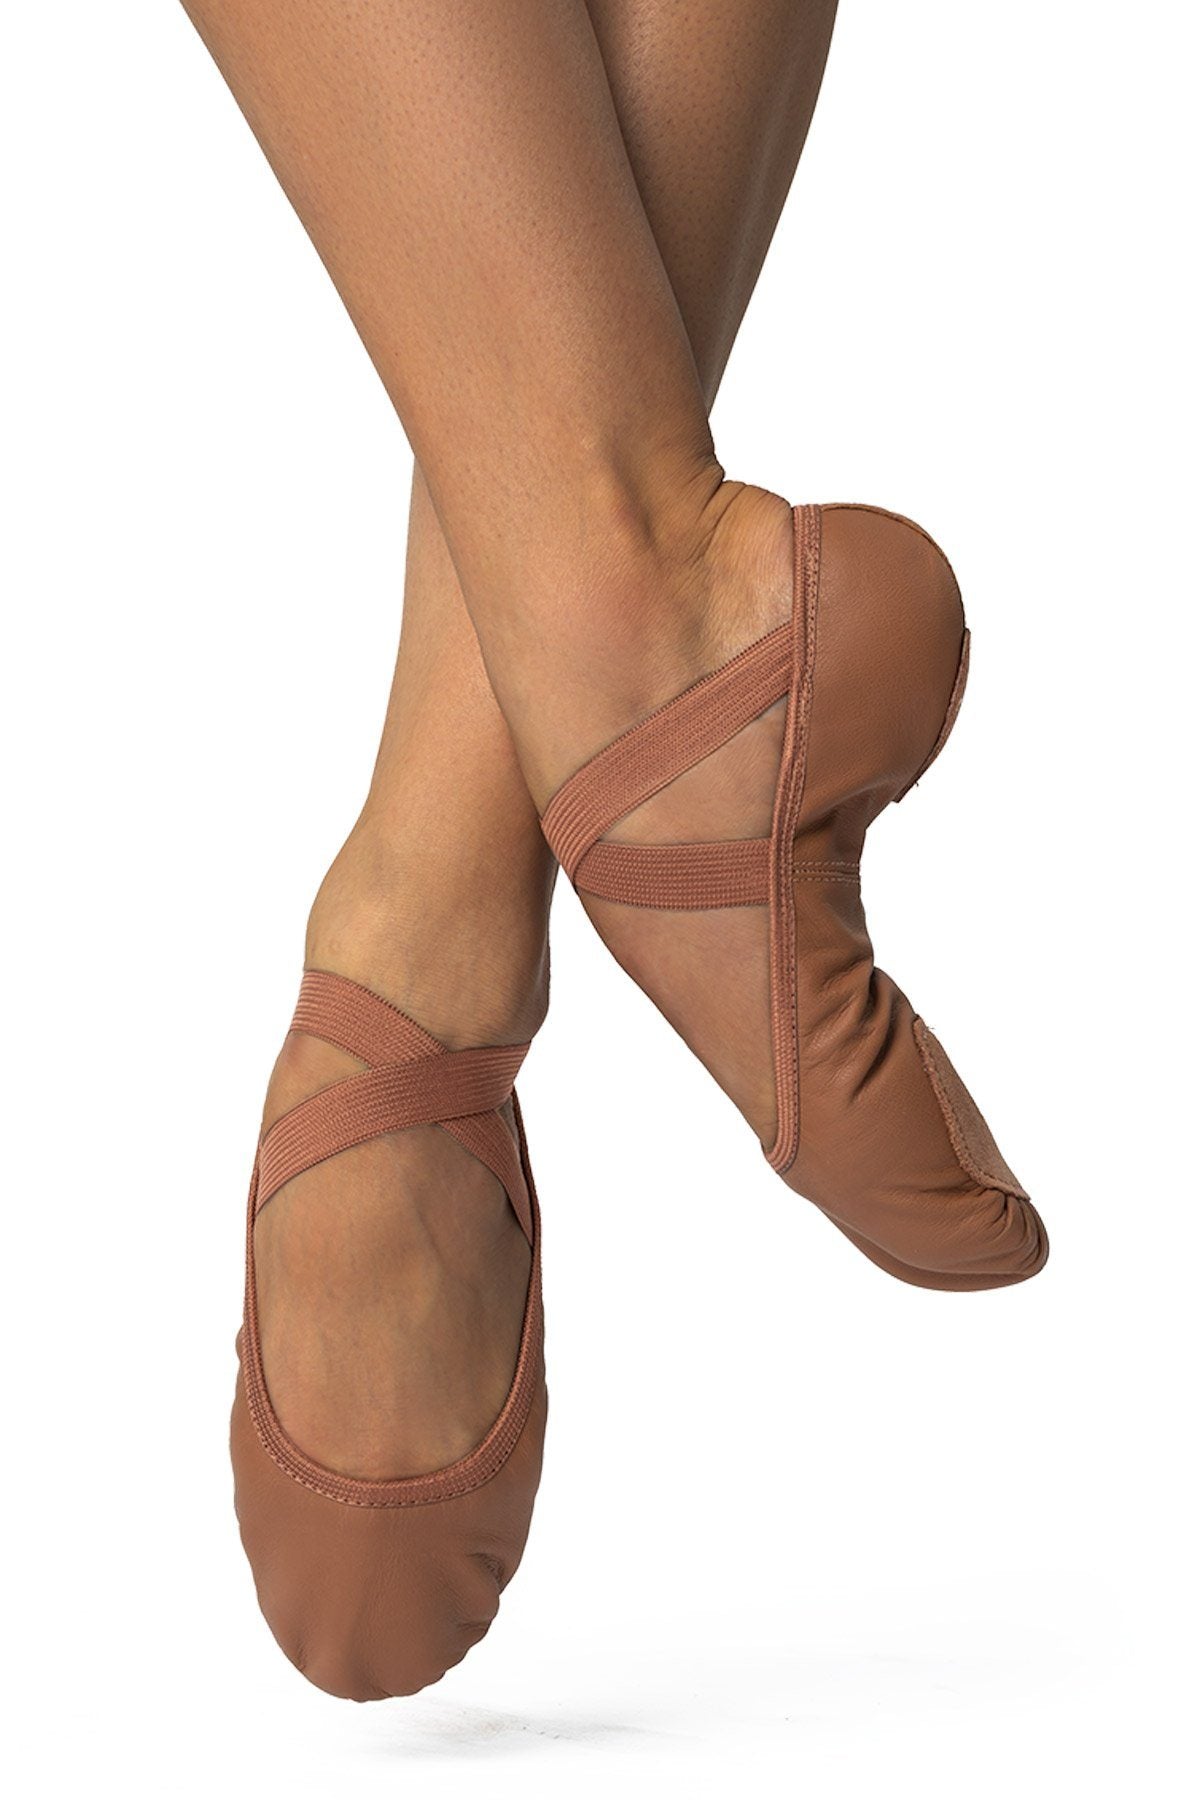 "Brit" Child Leather Split Sole Ballet Slipper Ballet Shoes Só Dança 